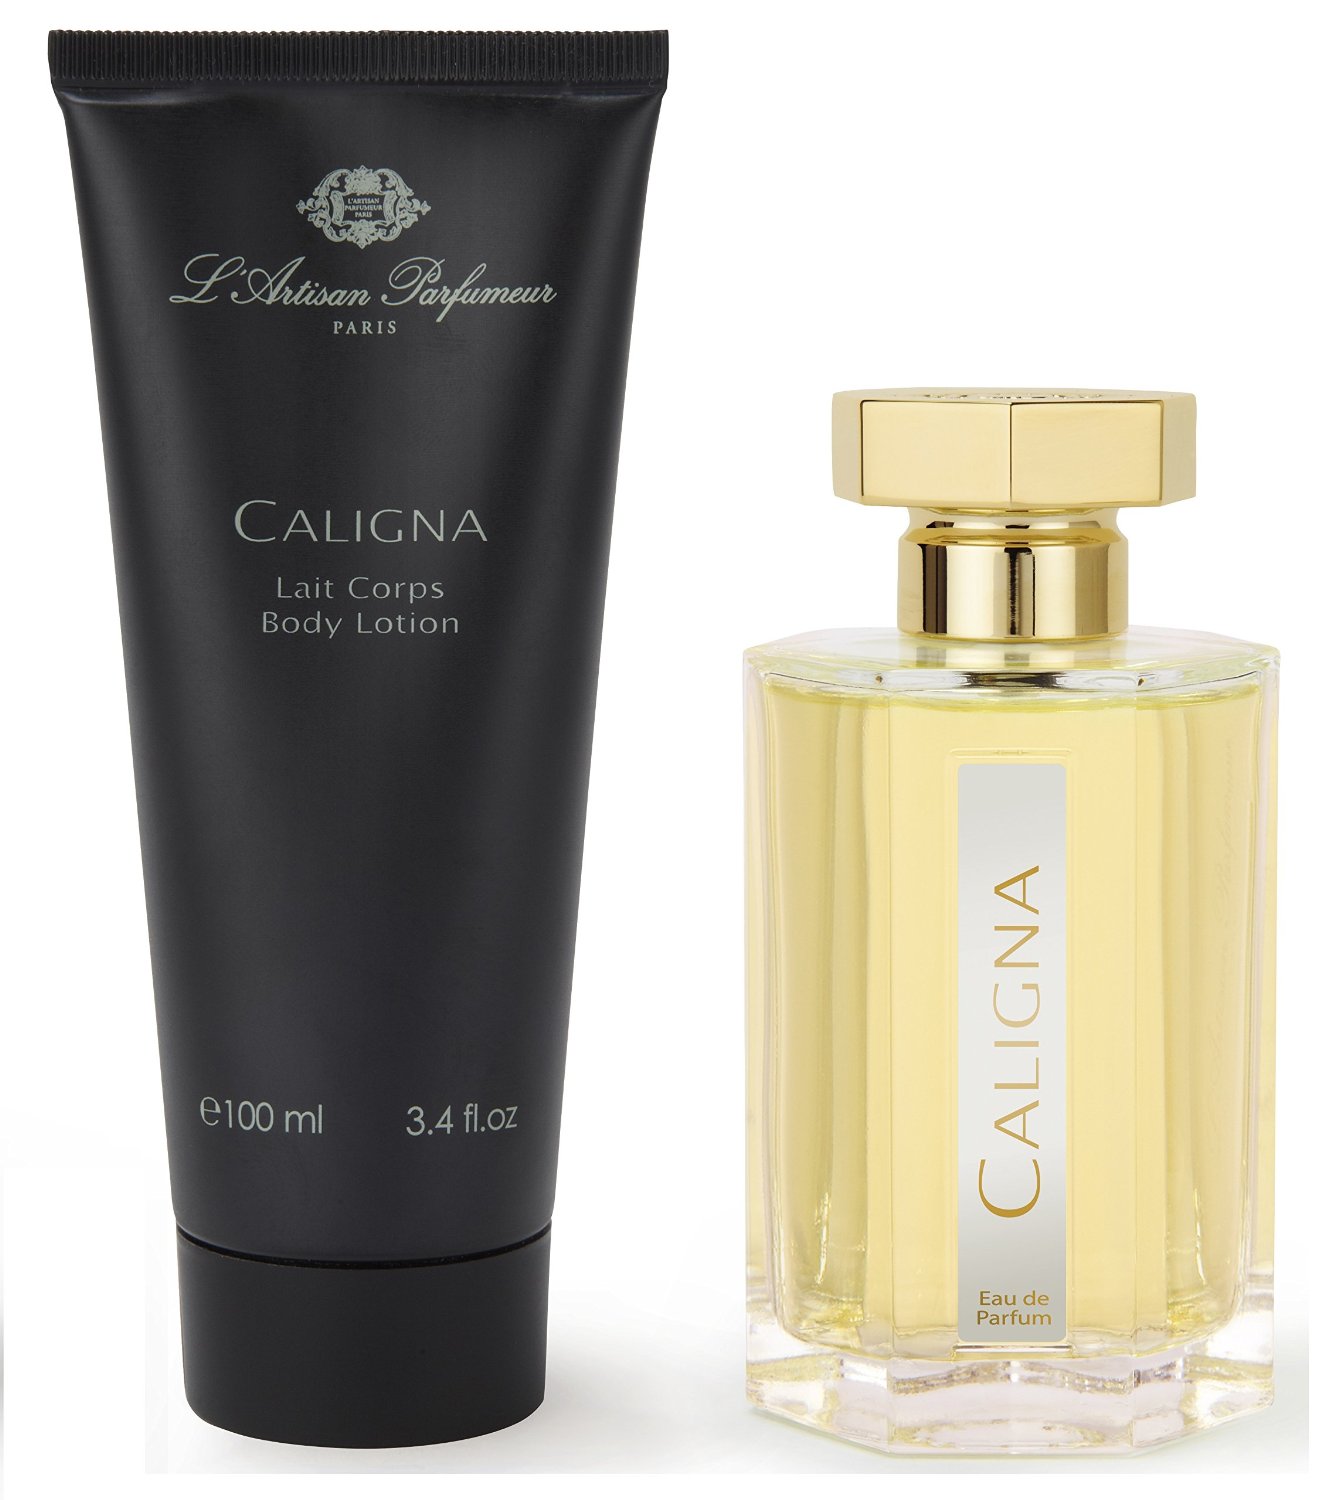 L'Artisan Parfumeur 'Caligna' Eau de Parfum & Body Lotion Gift Set 3.4 Oz/100ml